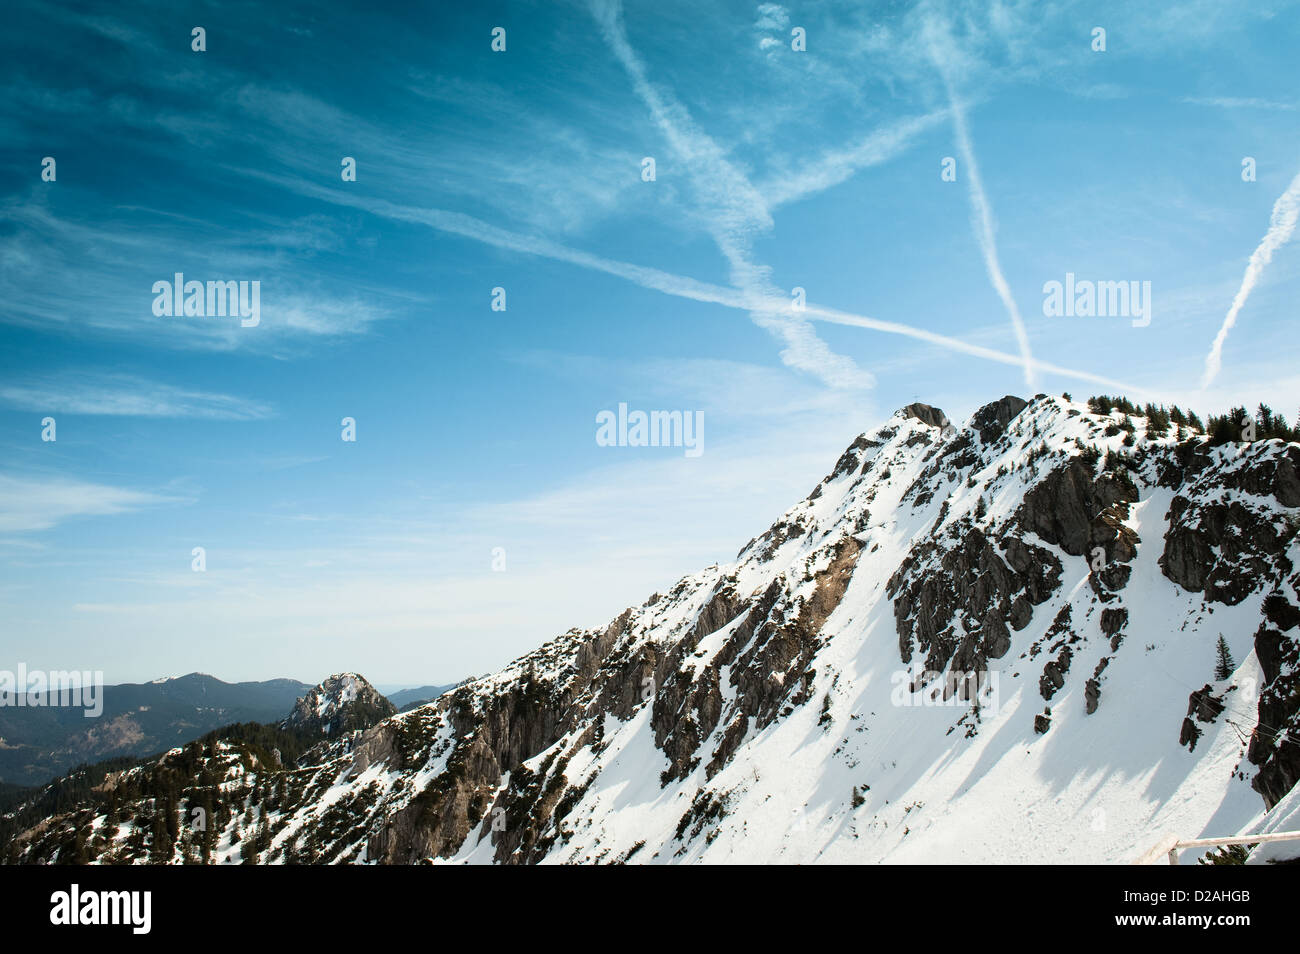 German Alps overlooking rural landscape Stock Photo